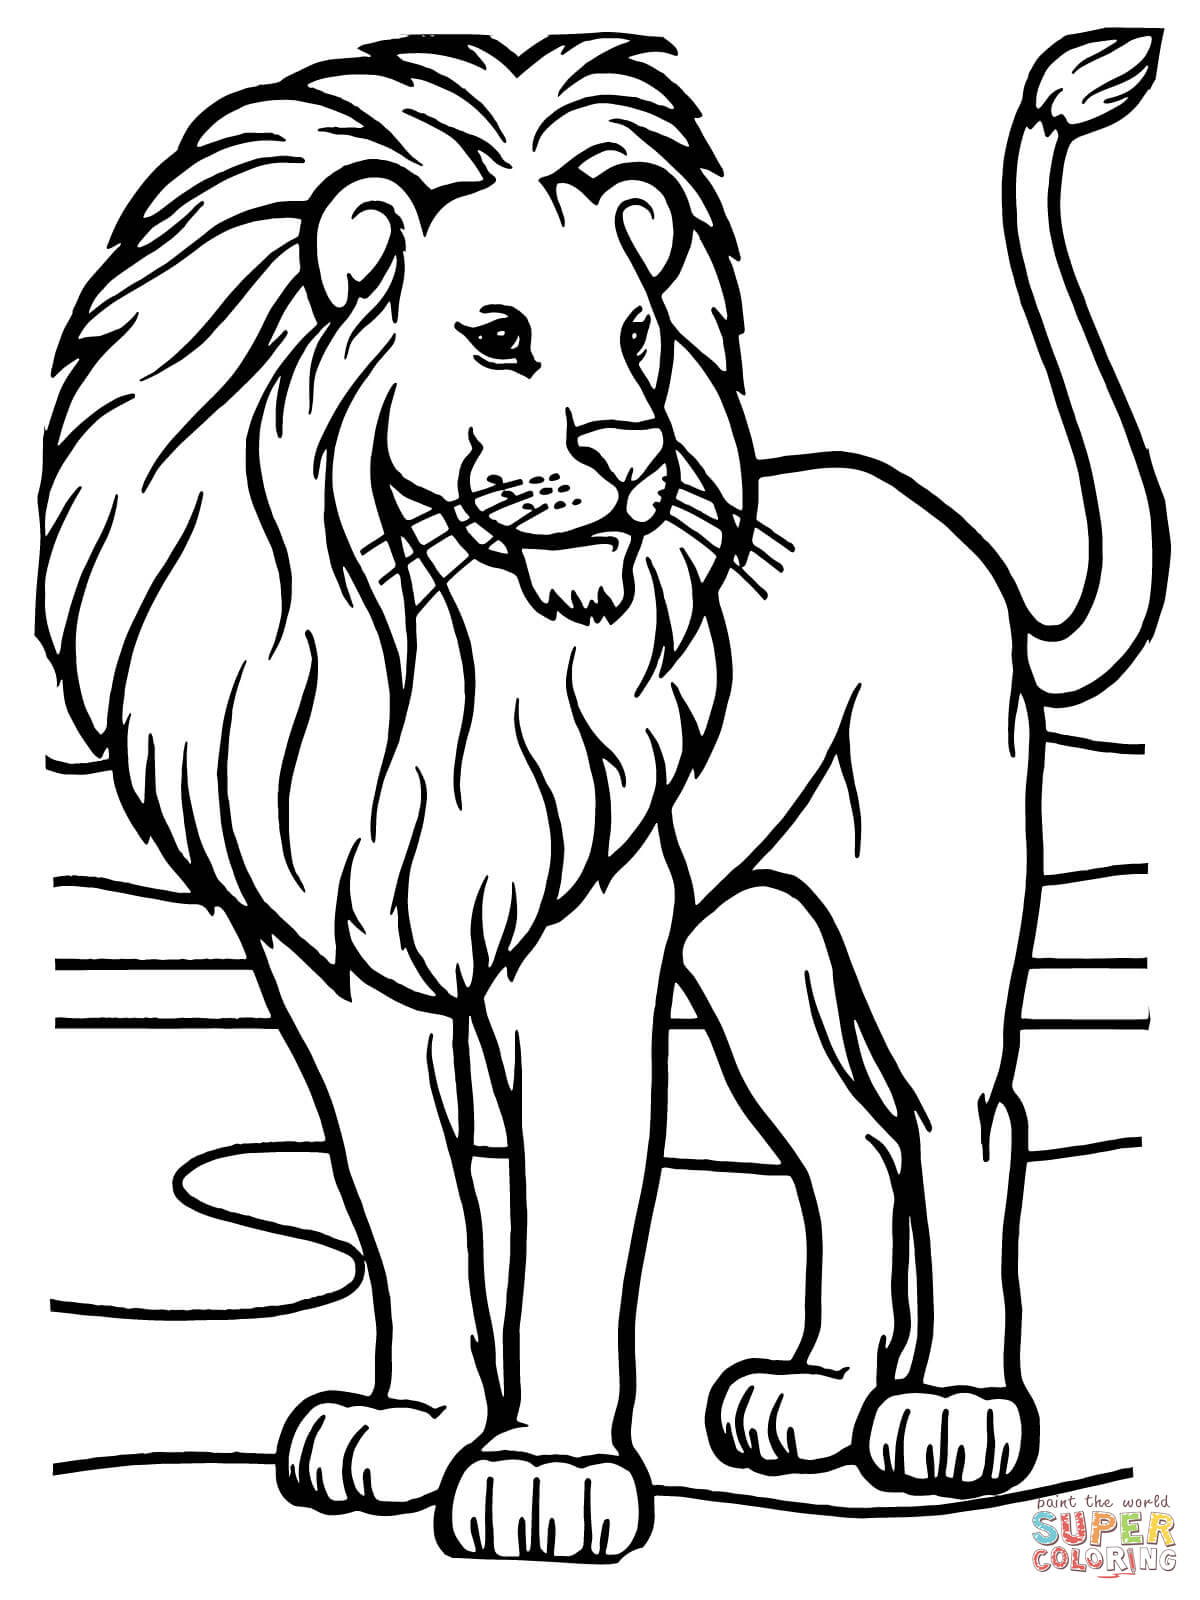 Ausmalbilder Löwen - Malvorlagen Kostenlos Zum Ausdrucken bestimmt für Ausmalbild Löwe